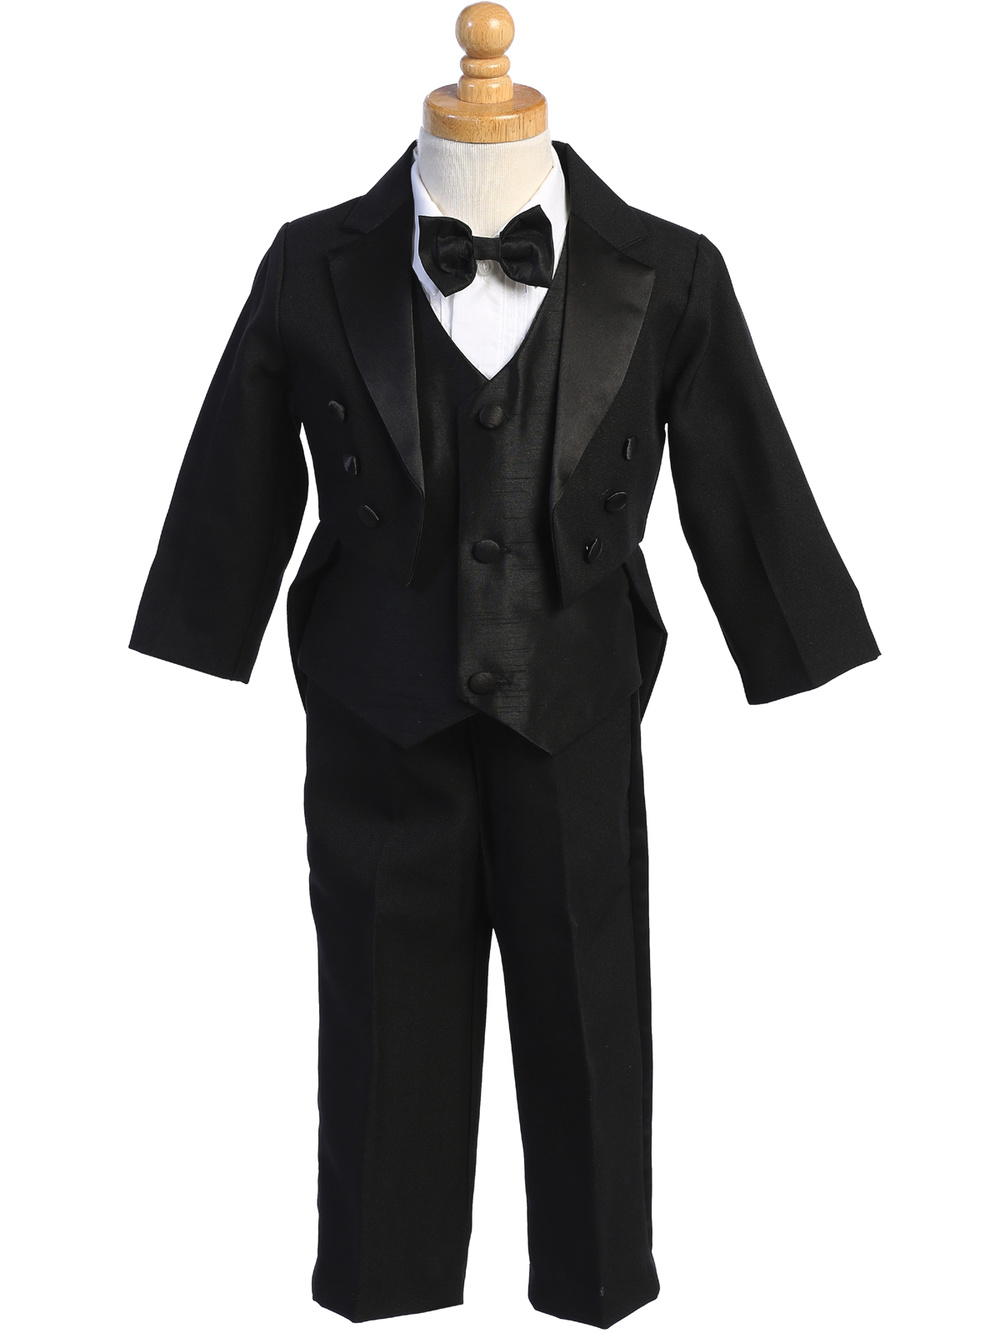 7540B-A BLK Black Tail tuxedo with vest & bowtie - Suits & Tuxedos